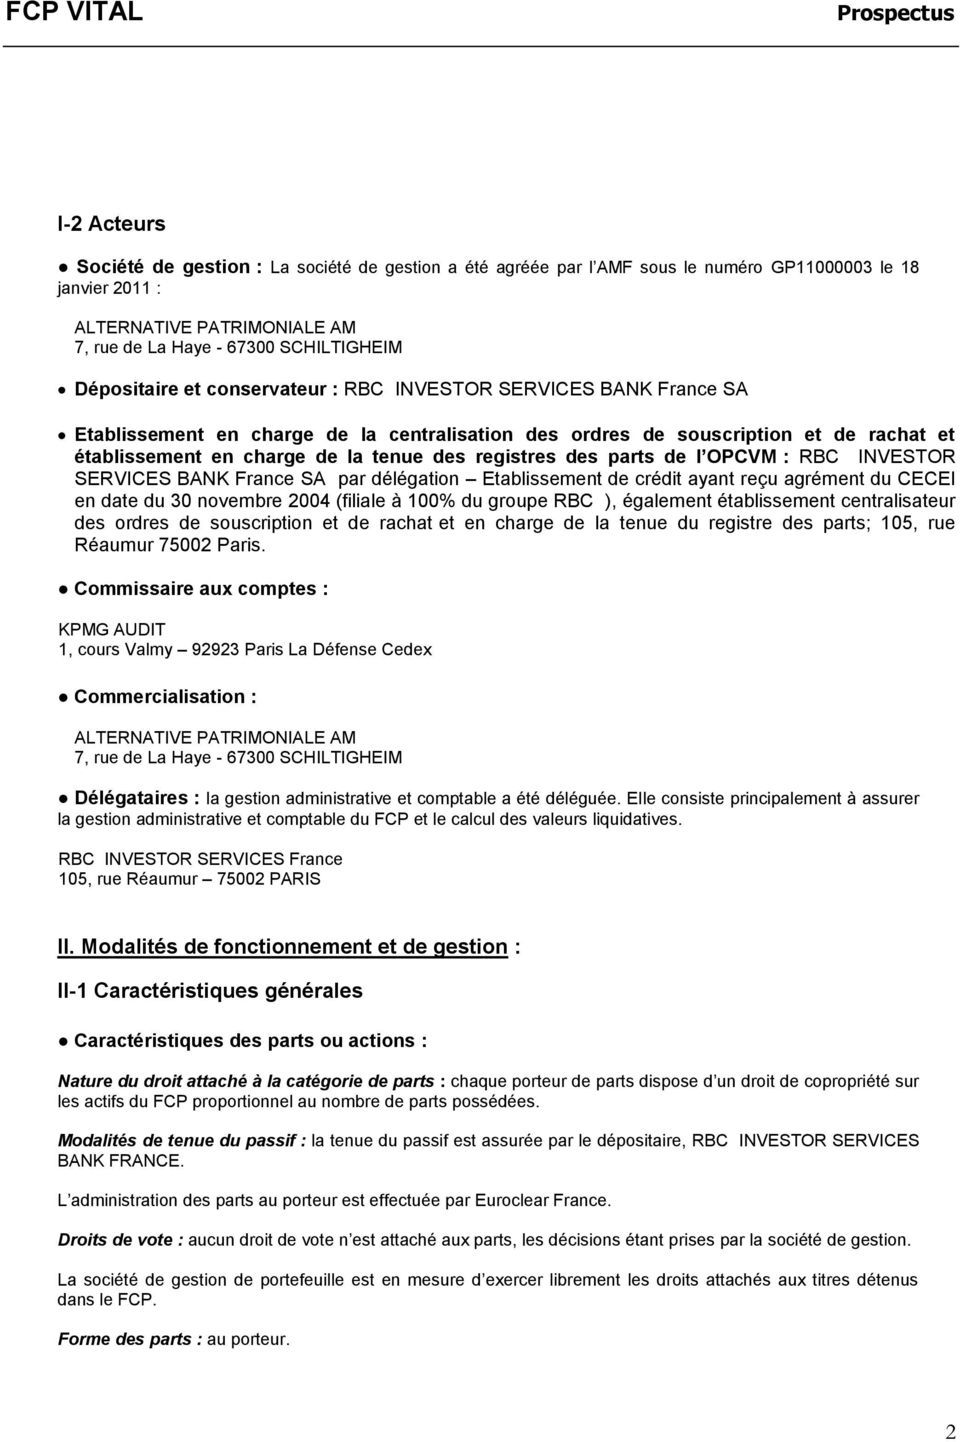 registres des parts de l OPCVM : RBC INVESTOR SERVICES BANK France SA par délégation Etablissement de crédit ayant reçu agrément du CECEI en date du 30 novembre 2004 (filiale à 100% du groupe RBC ),